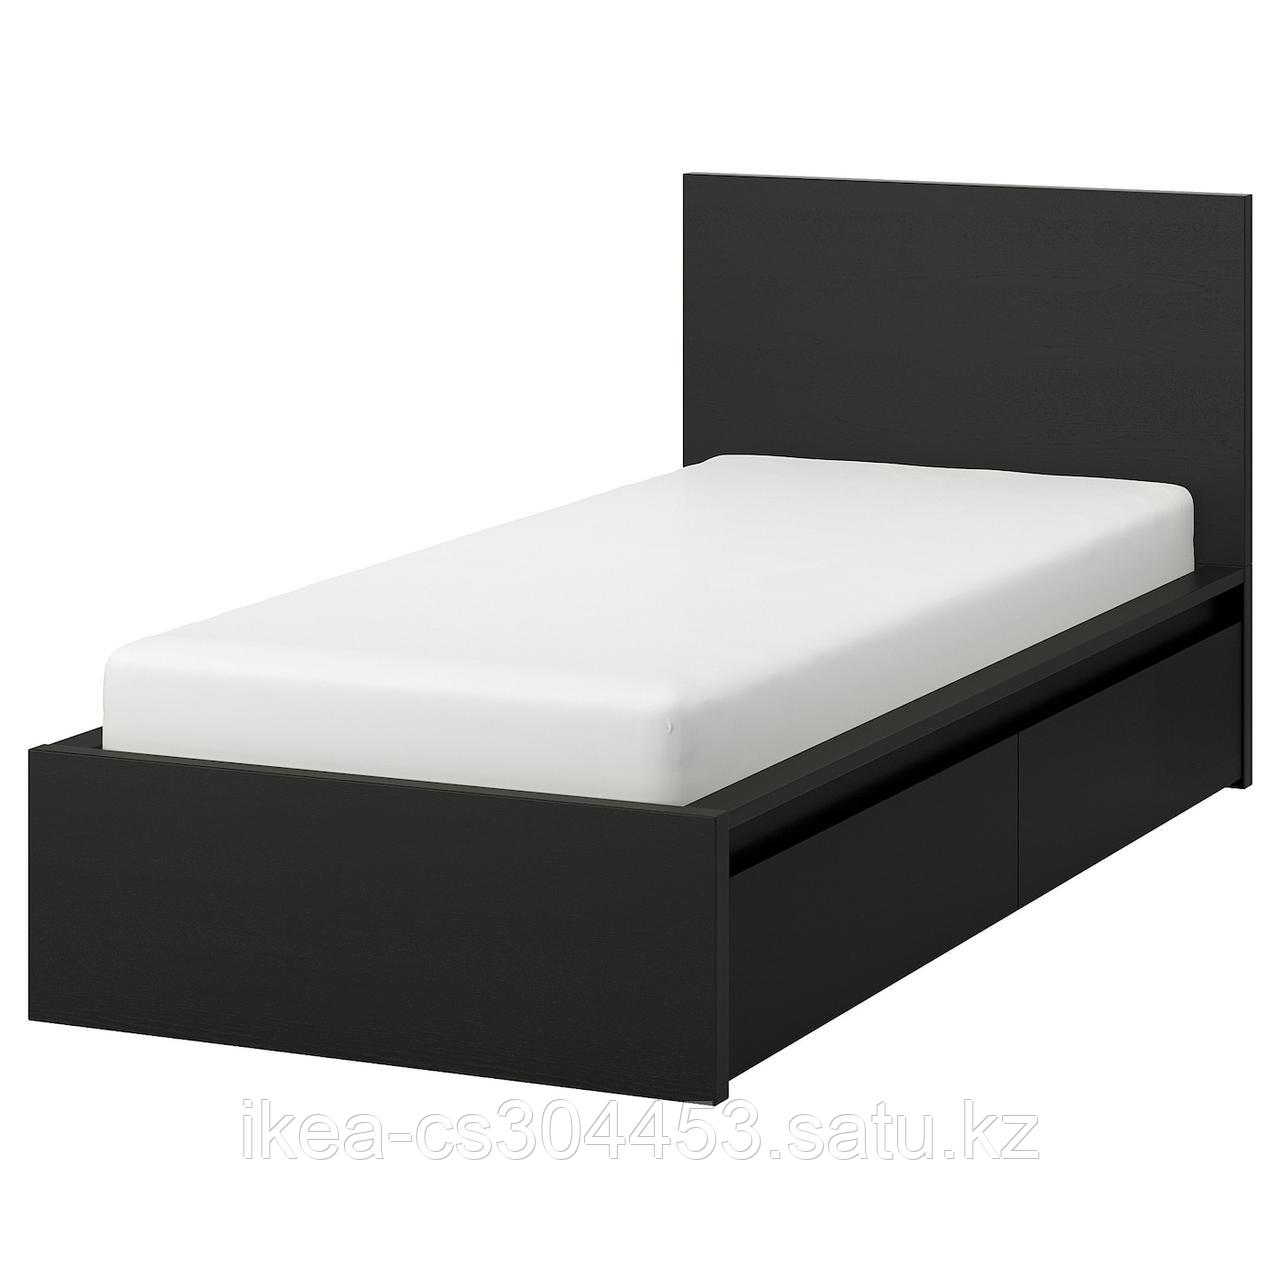 MALM МАЛЬМ Каркас кровати+2 кроватных ящика, черно-коричневый/Лурой,